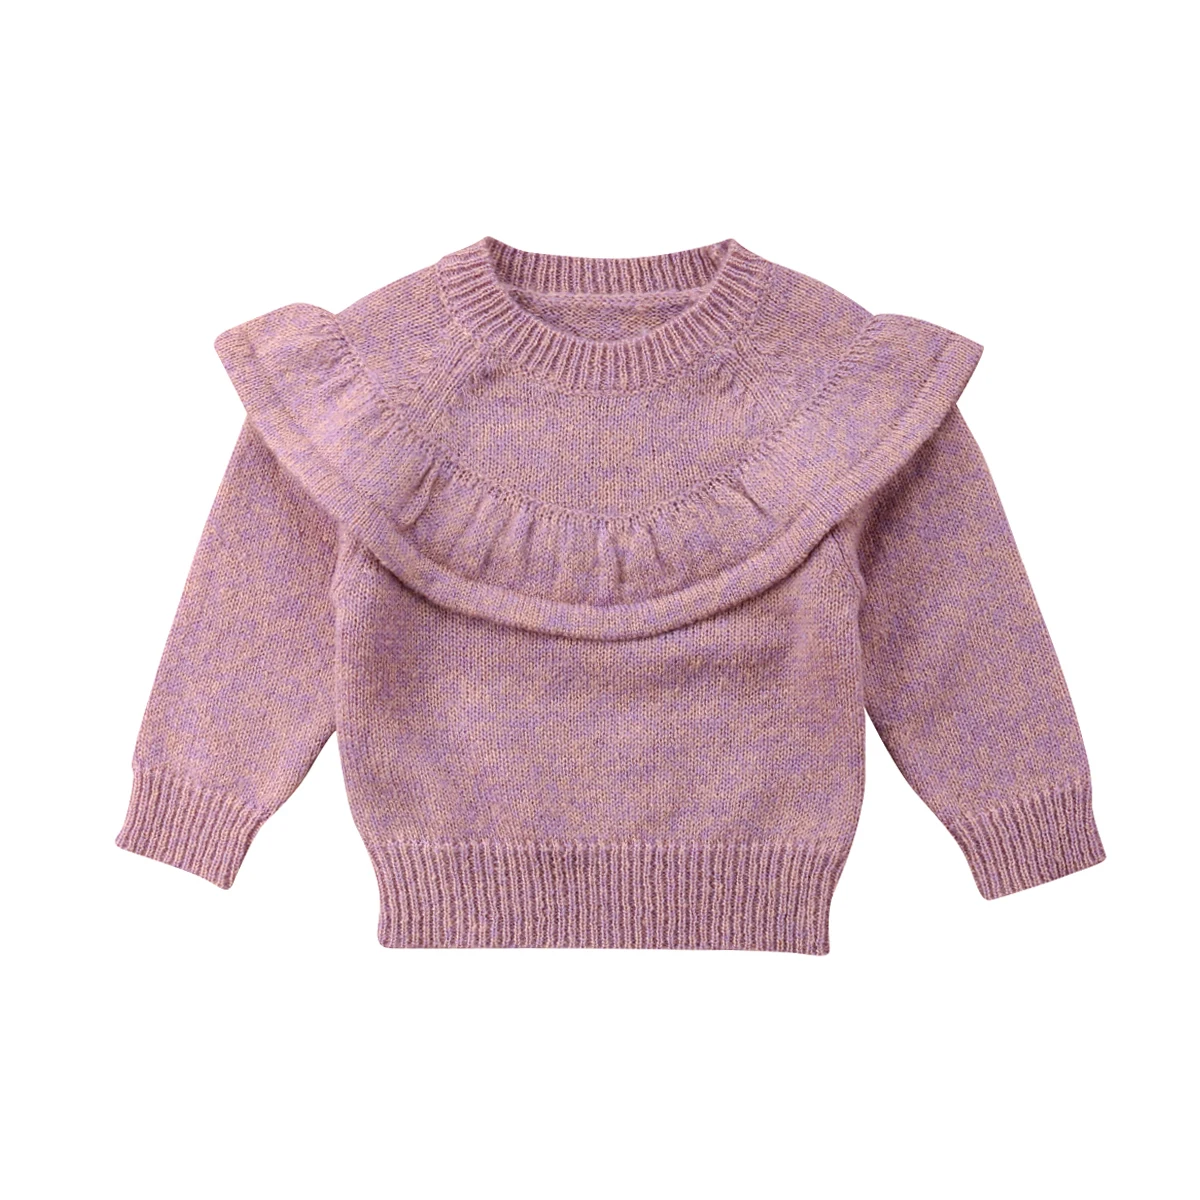 Осенний свитер для новорожденных девочек, топы, трикотажное теплое пальто с оборками, верхняя одежда, От 0 до 3 лет костюм для малышей